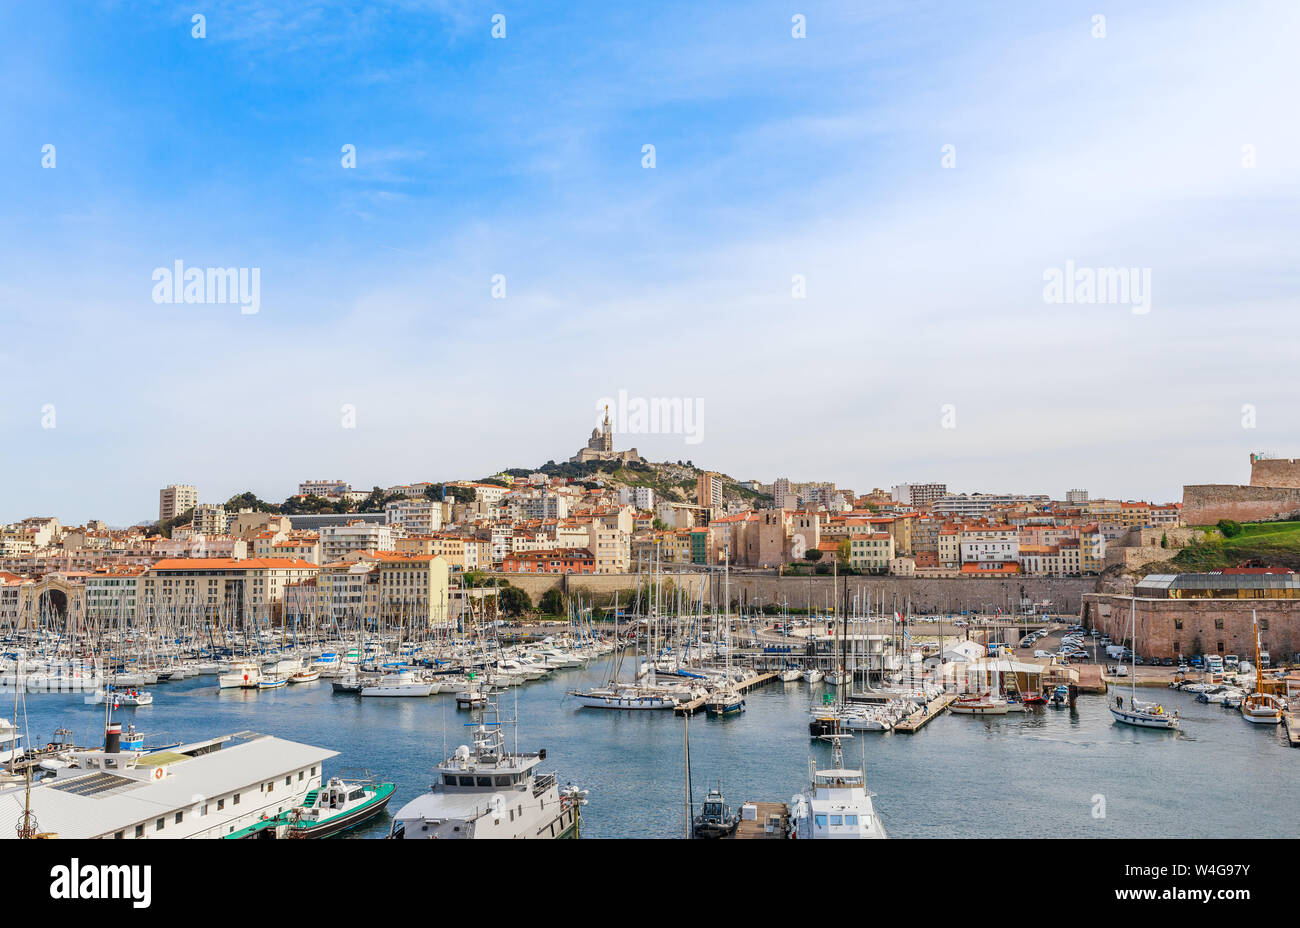 Historique de la ville française de Marseille et de la côte de la mer  Méditerranée. Marseille est le plus grand port en France, l'Europe du Sud.  Grande ville célèbre et touristique des